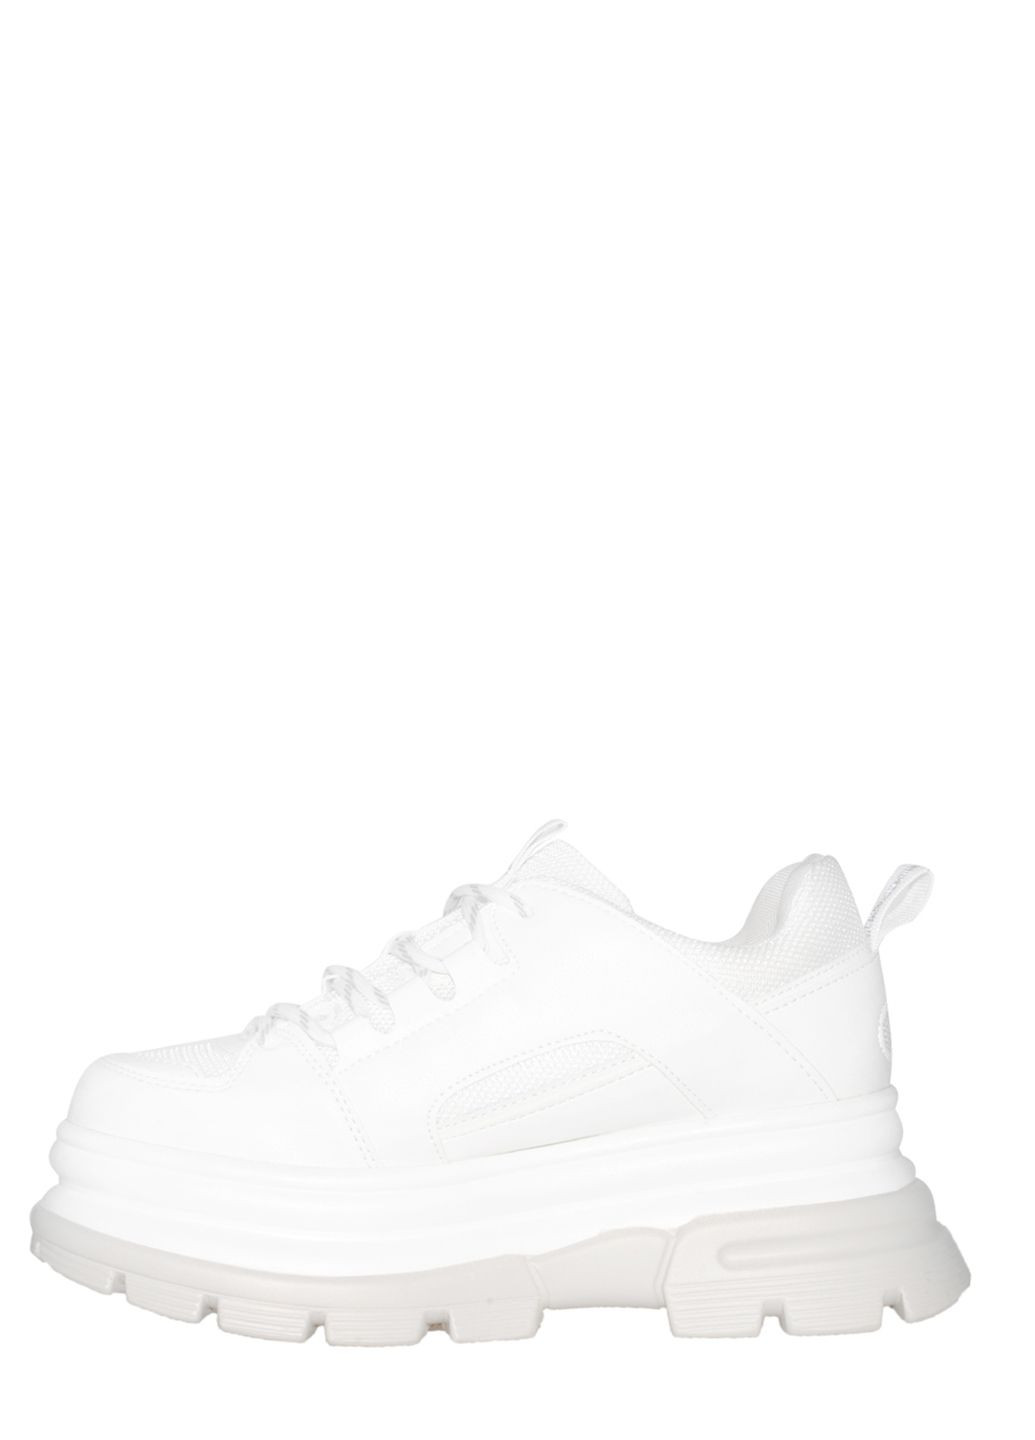 Белые демисезонные кроссовки 287-8 white Stilli